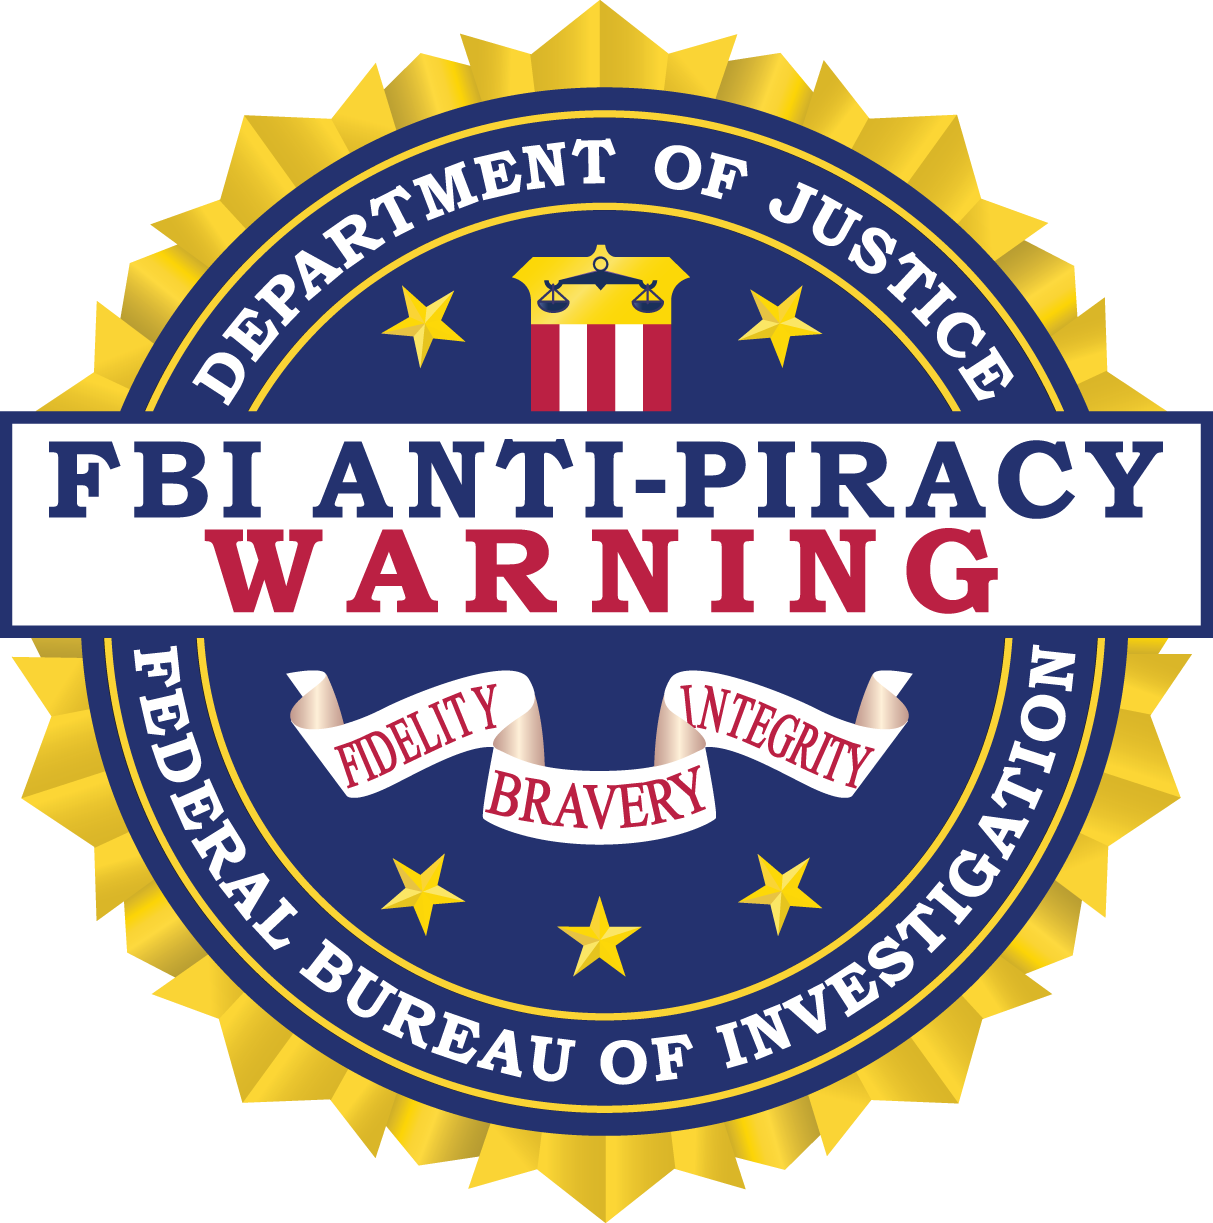 FBI anti-piracy warning seal